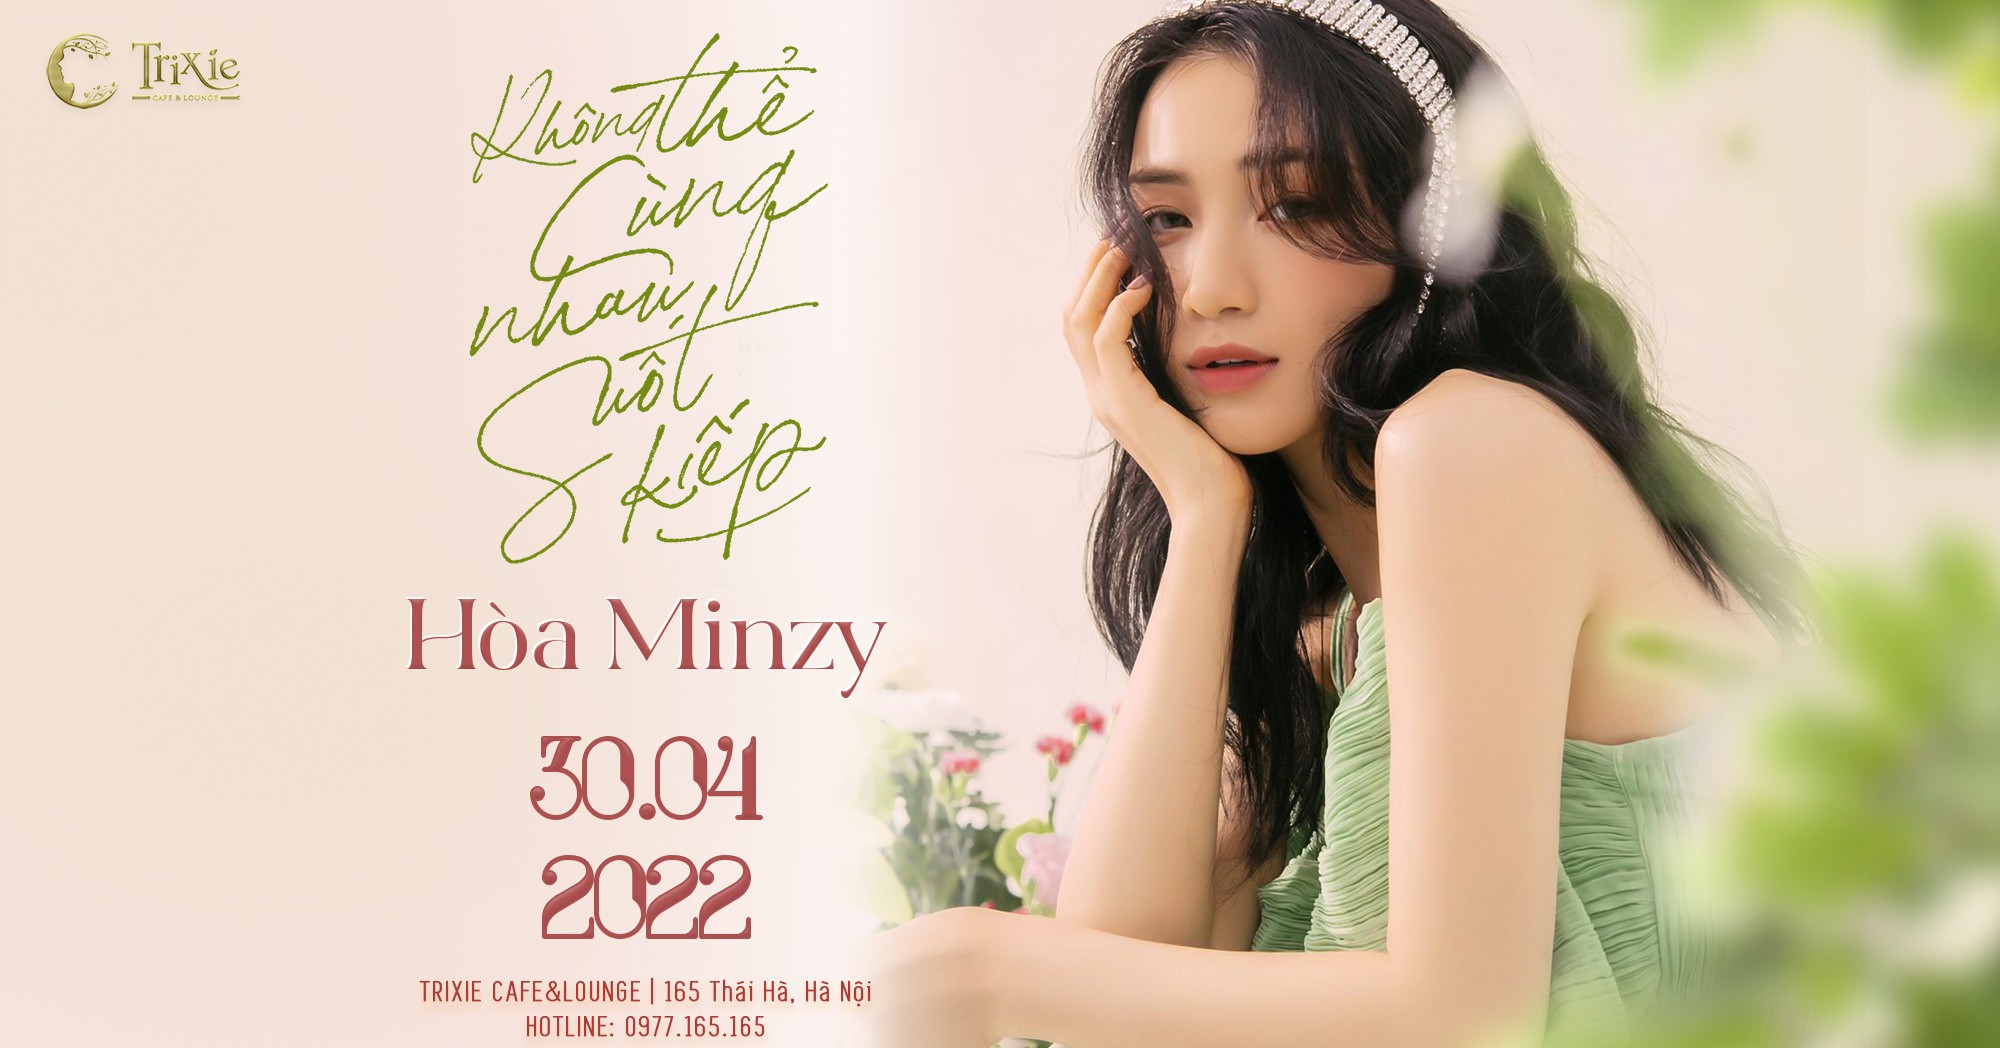 Minishow Hòa Minzy - Không thể cùng nhau suốt kiếp - Ngày 30.04.2022 